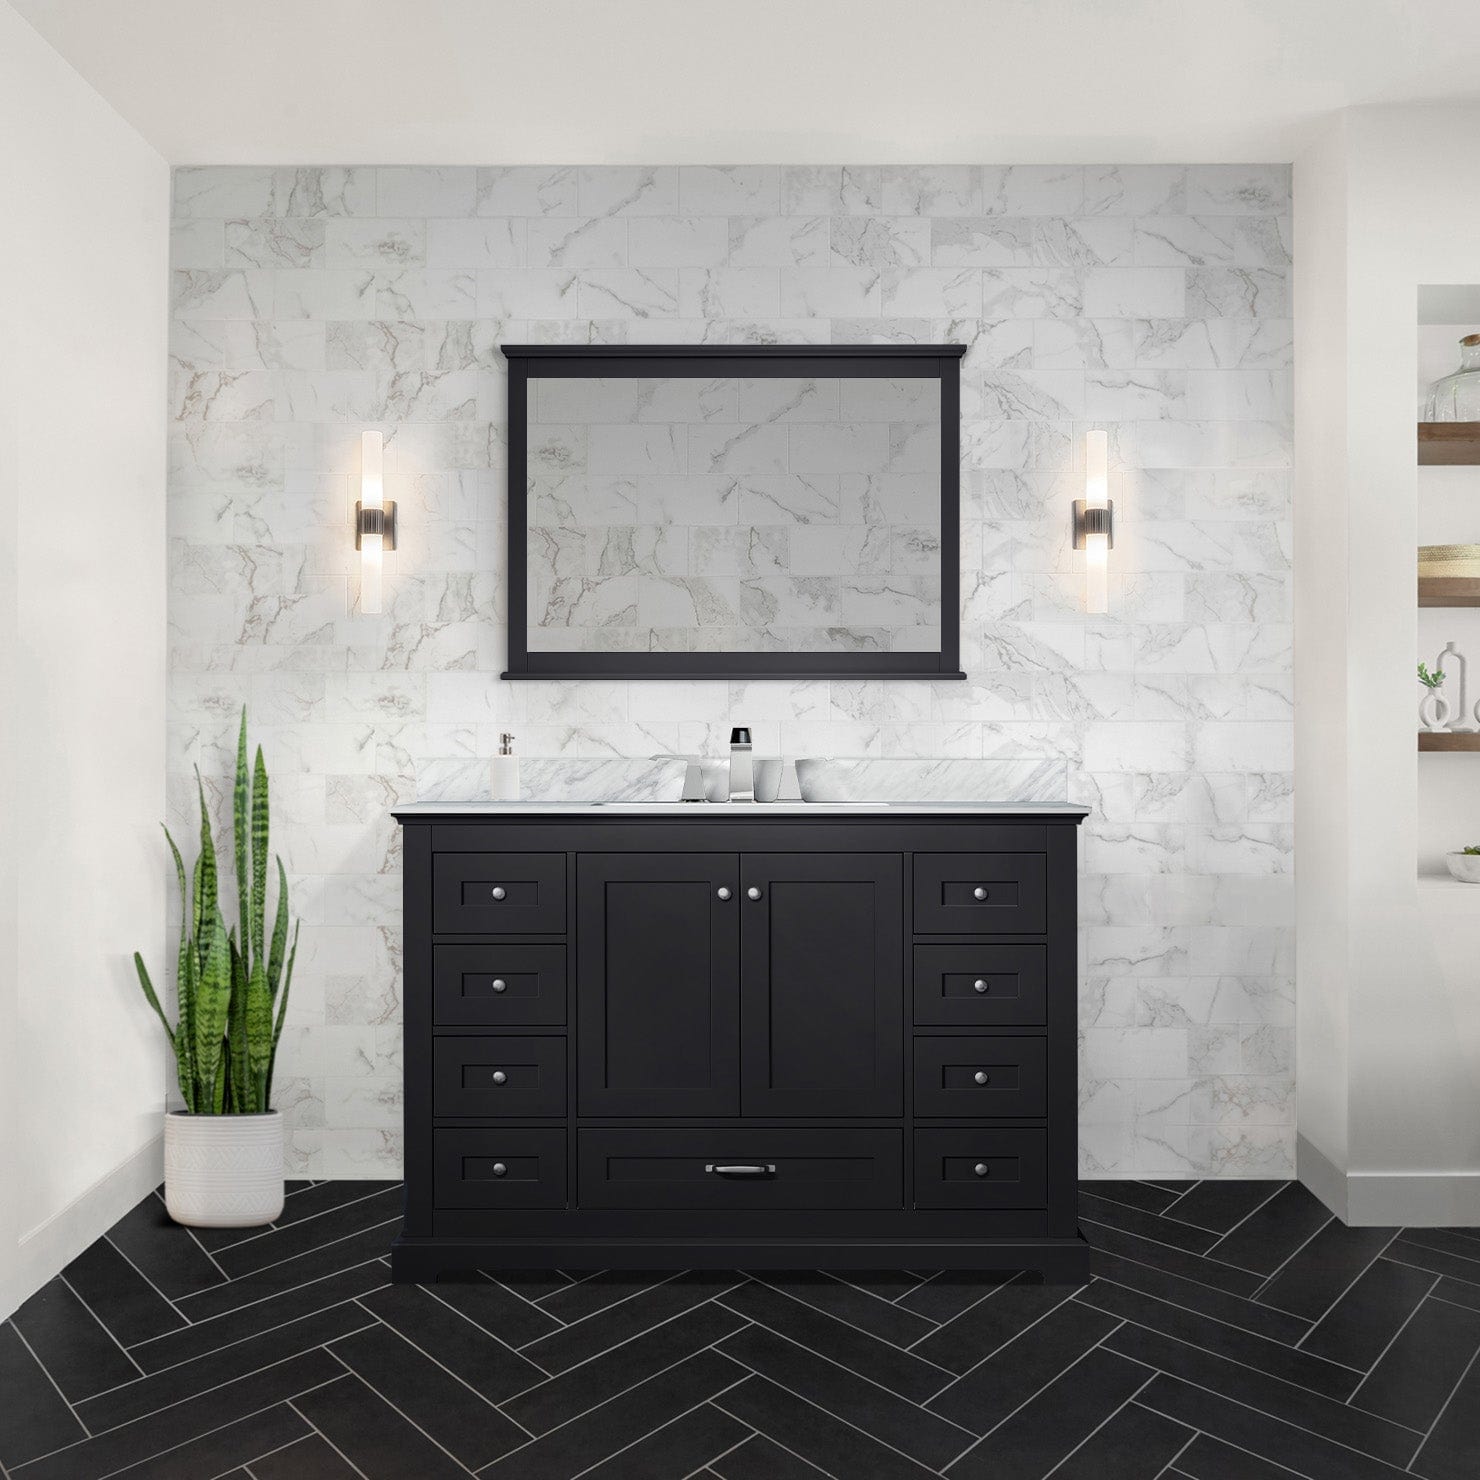 Lexora Bathroom Vanity Espresso / Carrara Marble / No Mirror Dukes 48" x 22" Single Bath Vanity